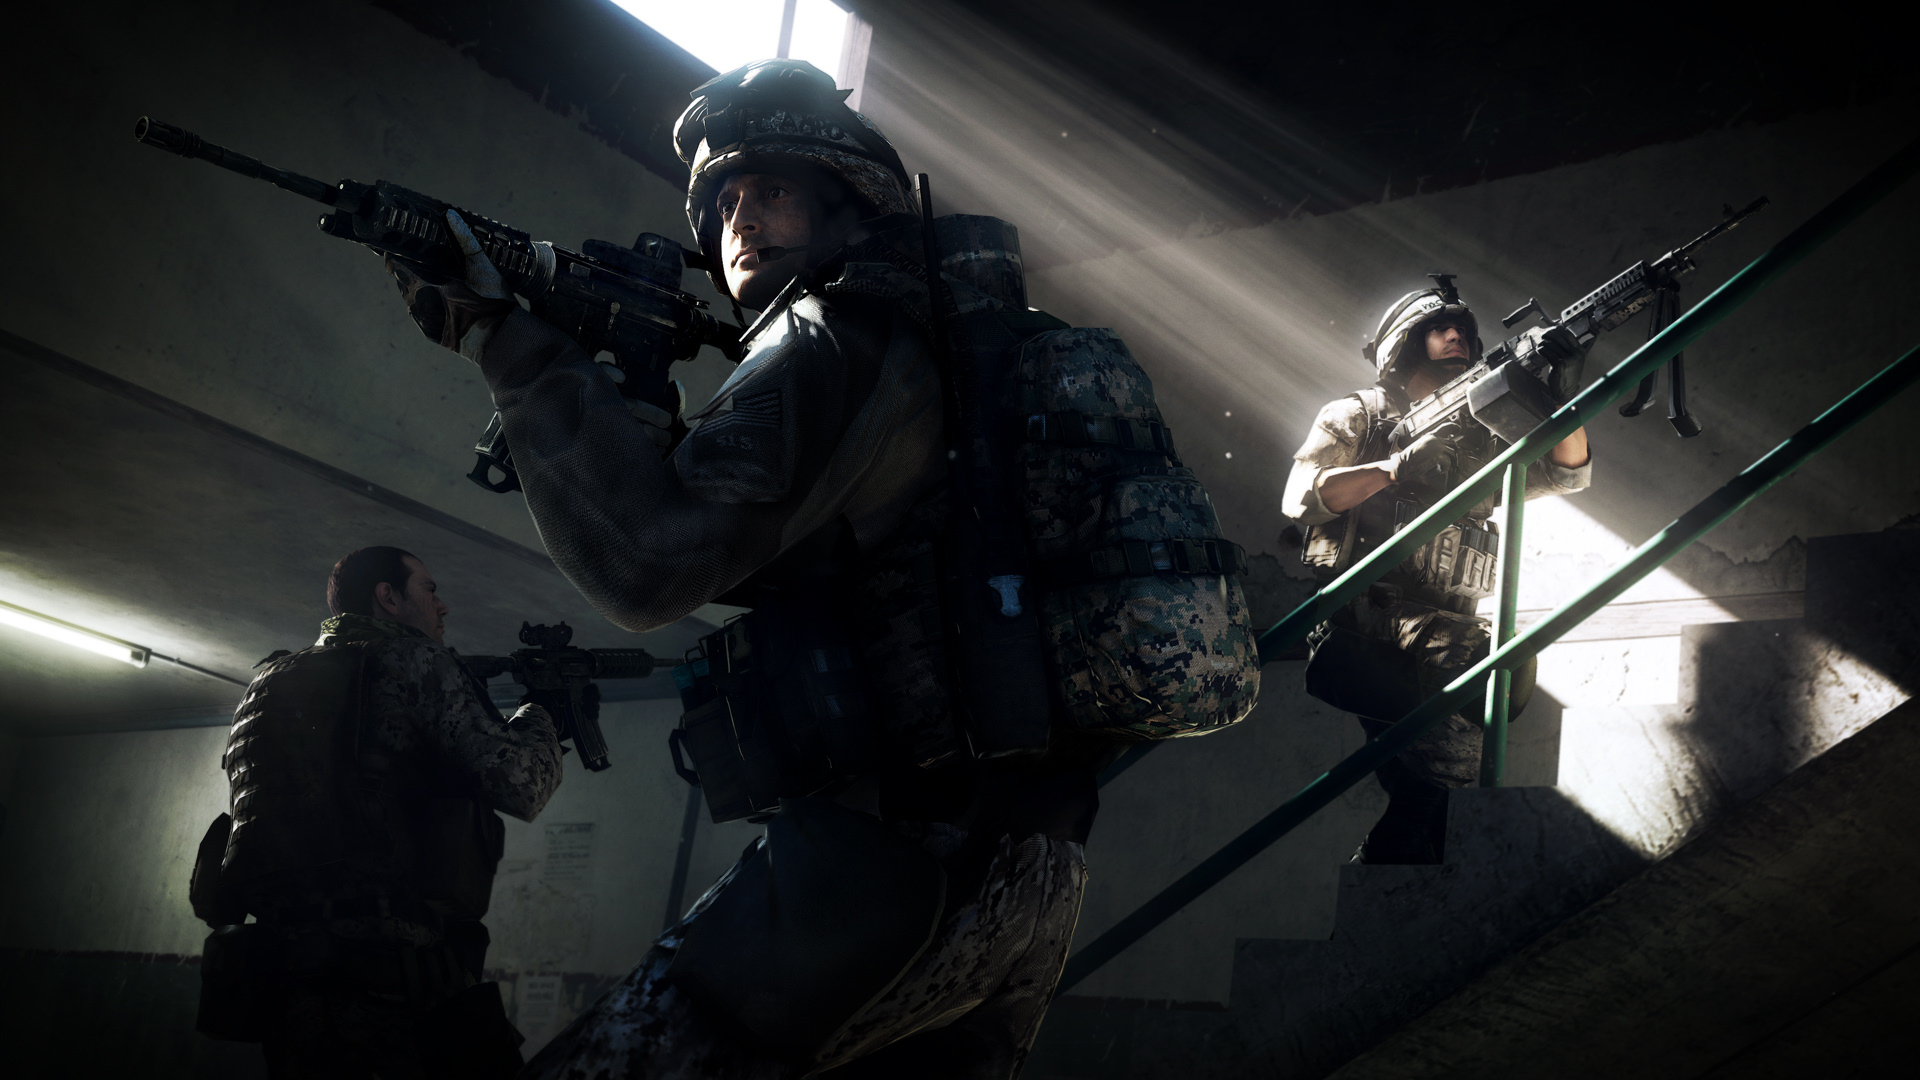 Immagine pubblicata in relazione al seguente contenuto: Battlefield 3, EA pubblica un nuovo trailer in-game e screenshot | Nome immagine: news14767_3.jpg